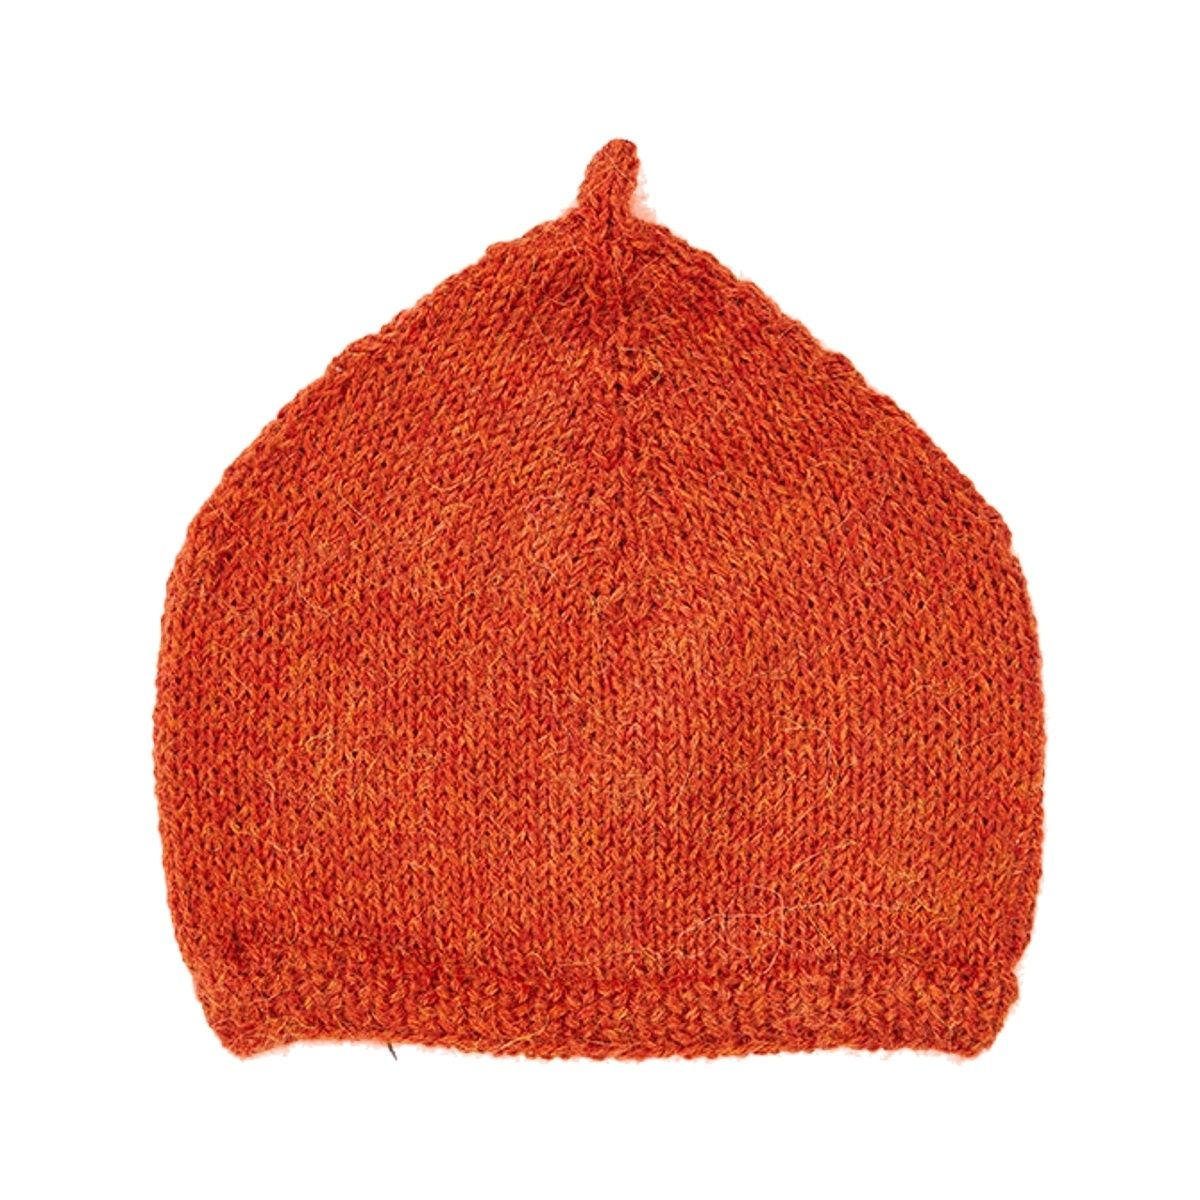 Caramel Baby & Child - Agon Baby Hat orange - Mützen und Hüte -